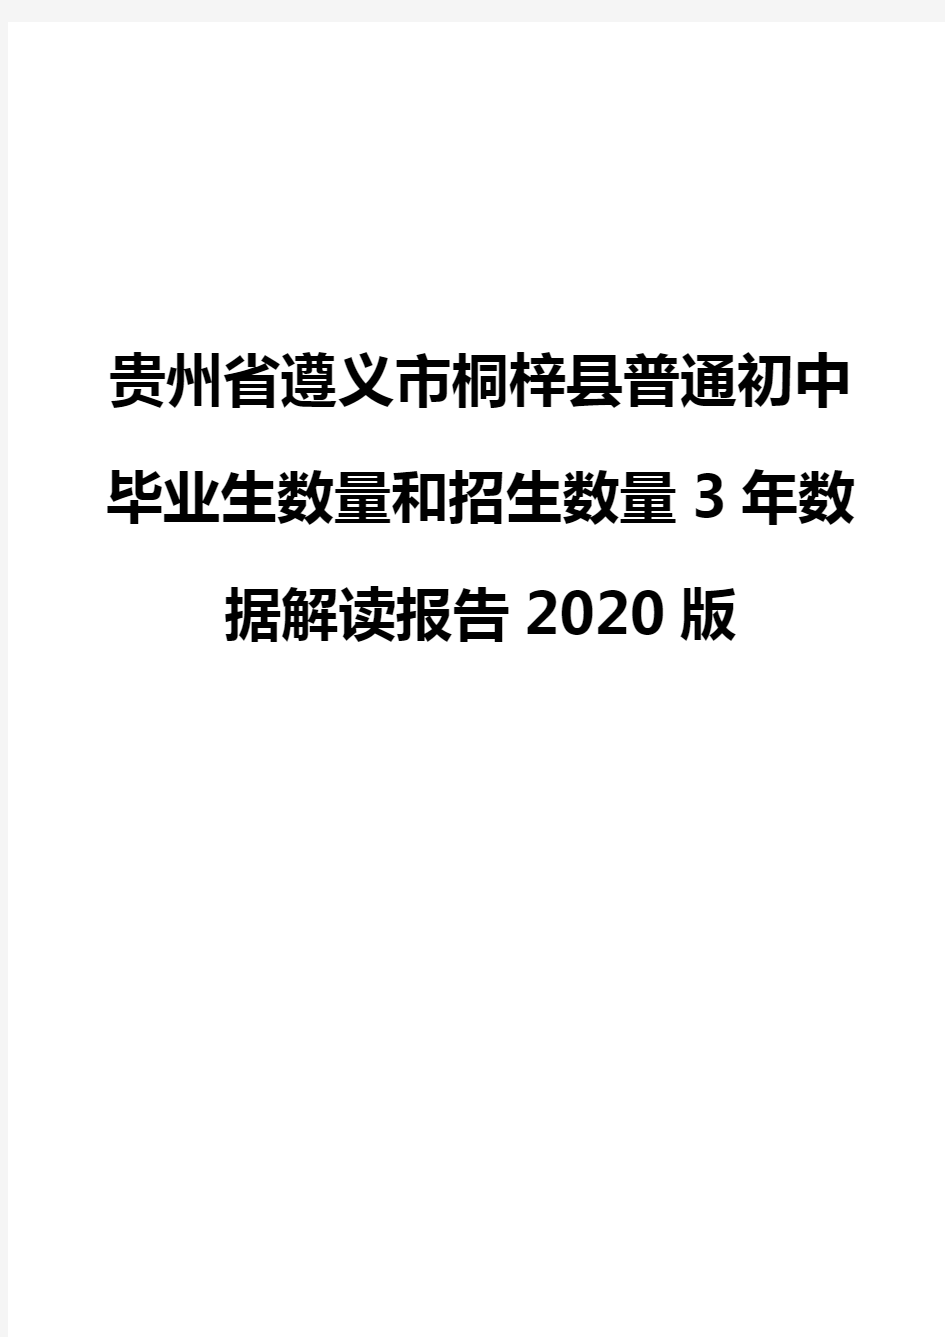 贵州省遵义市桐梓县普通初中毕业生数量和招生数量3年数据解读报告2020版